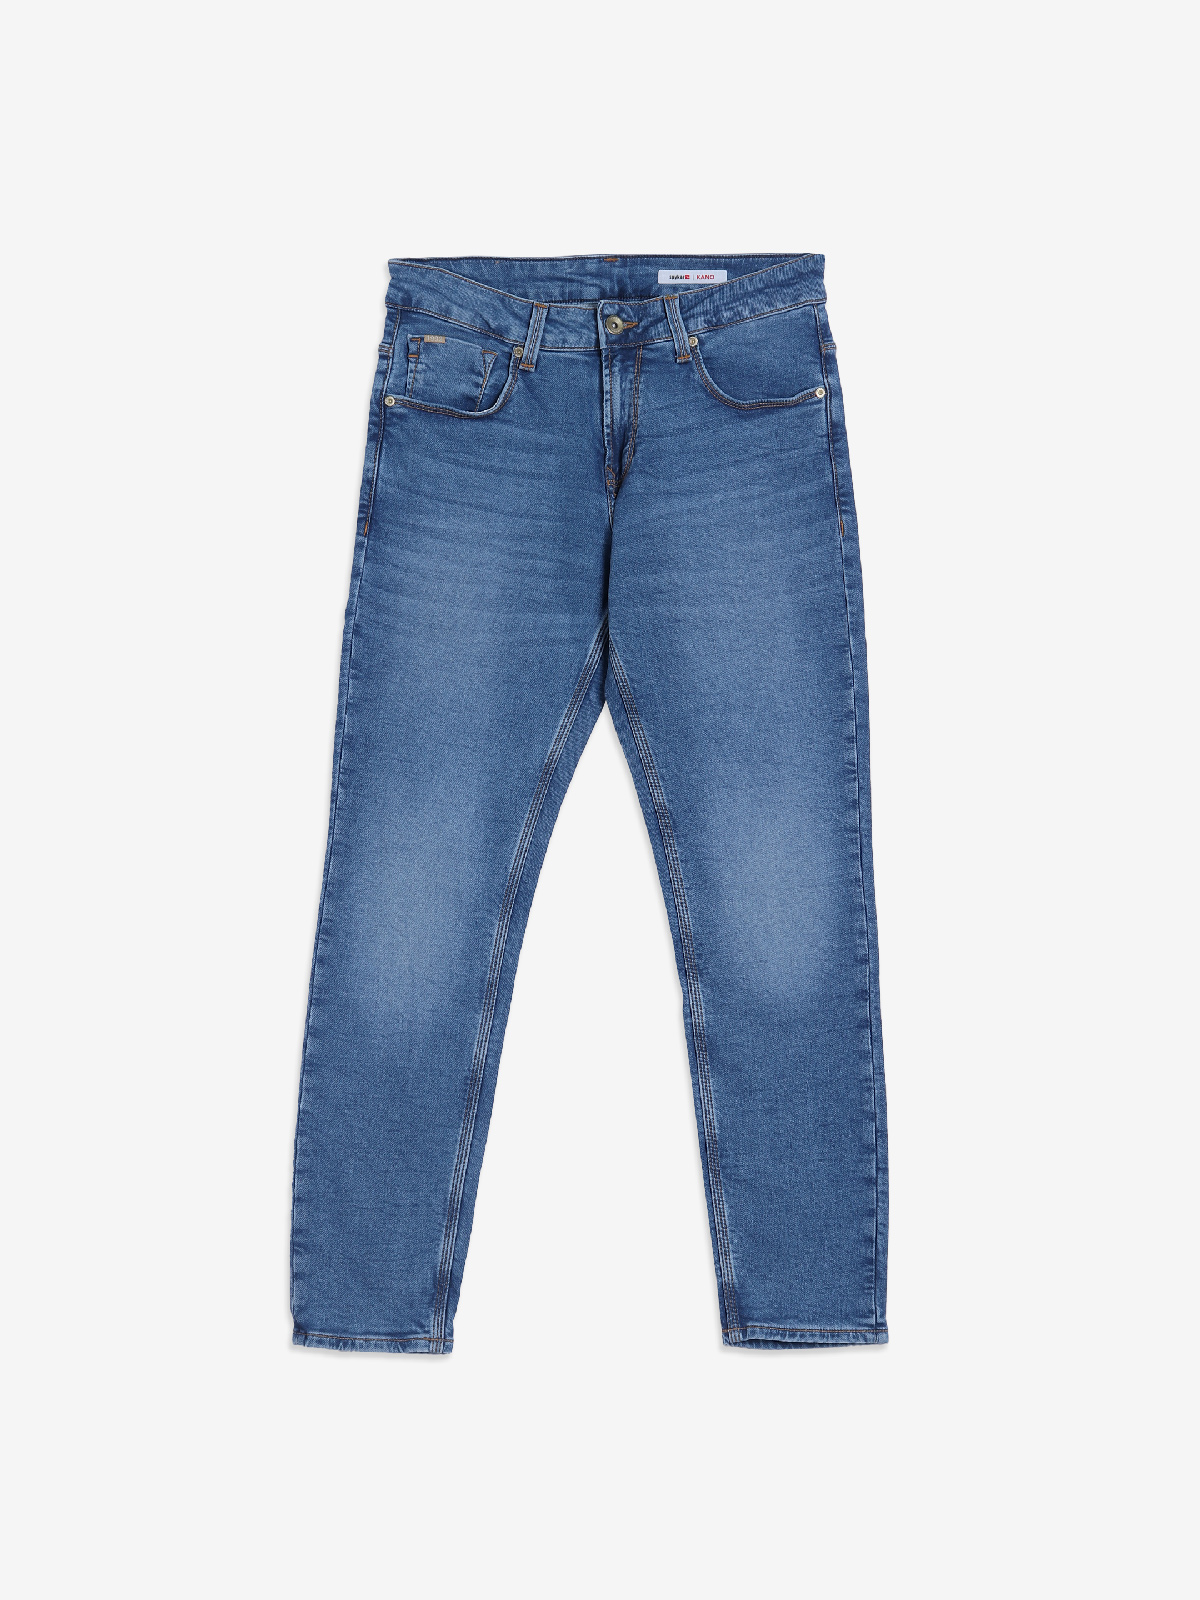 Spykar Slim Men Dark Blue Jeans - Buy Spykar Slim Men Dark Blue Jeans  Online at Best Prices in India | Flipkart.com